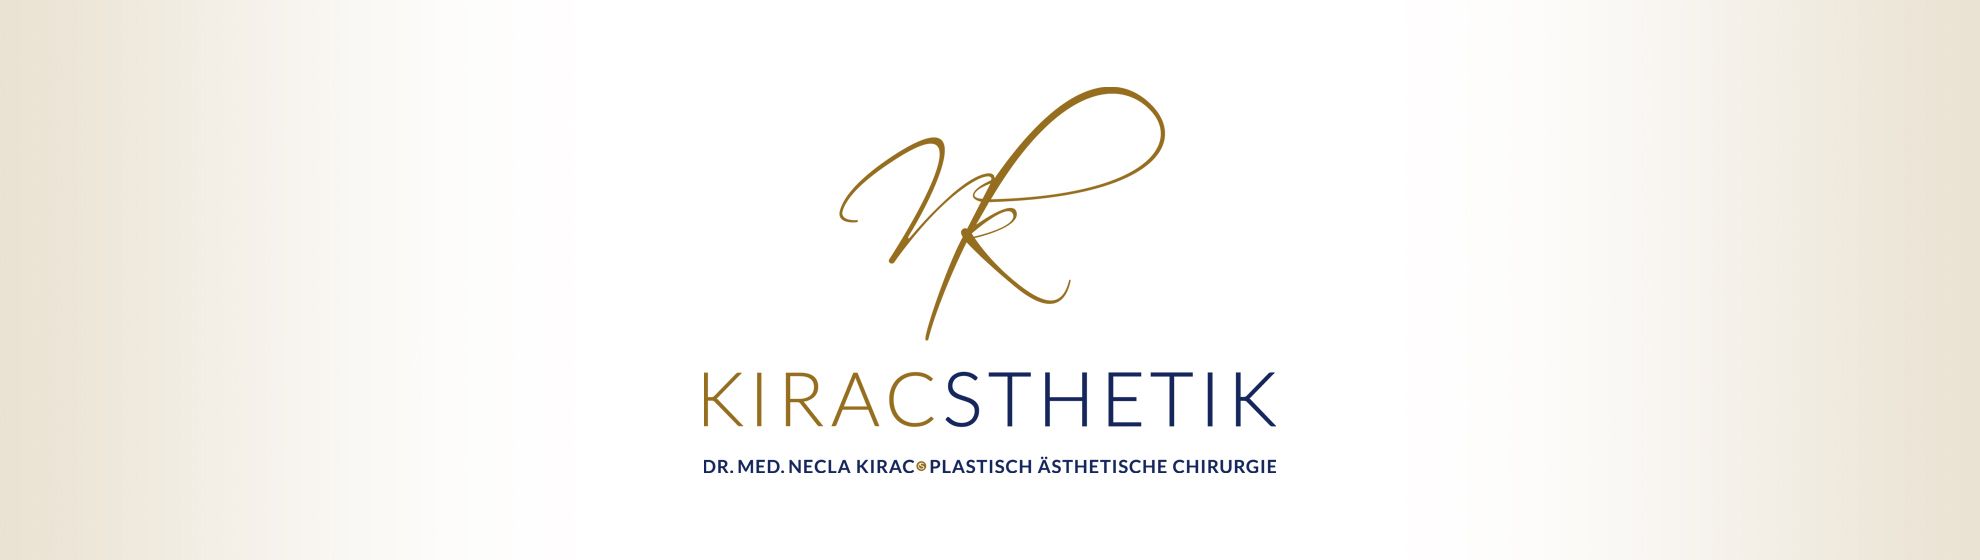 Dr. med. Necla Kirac